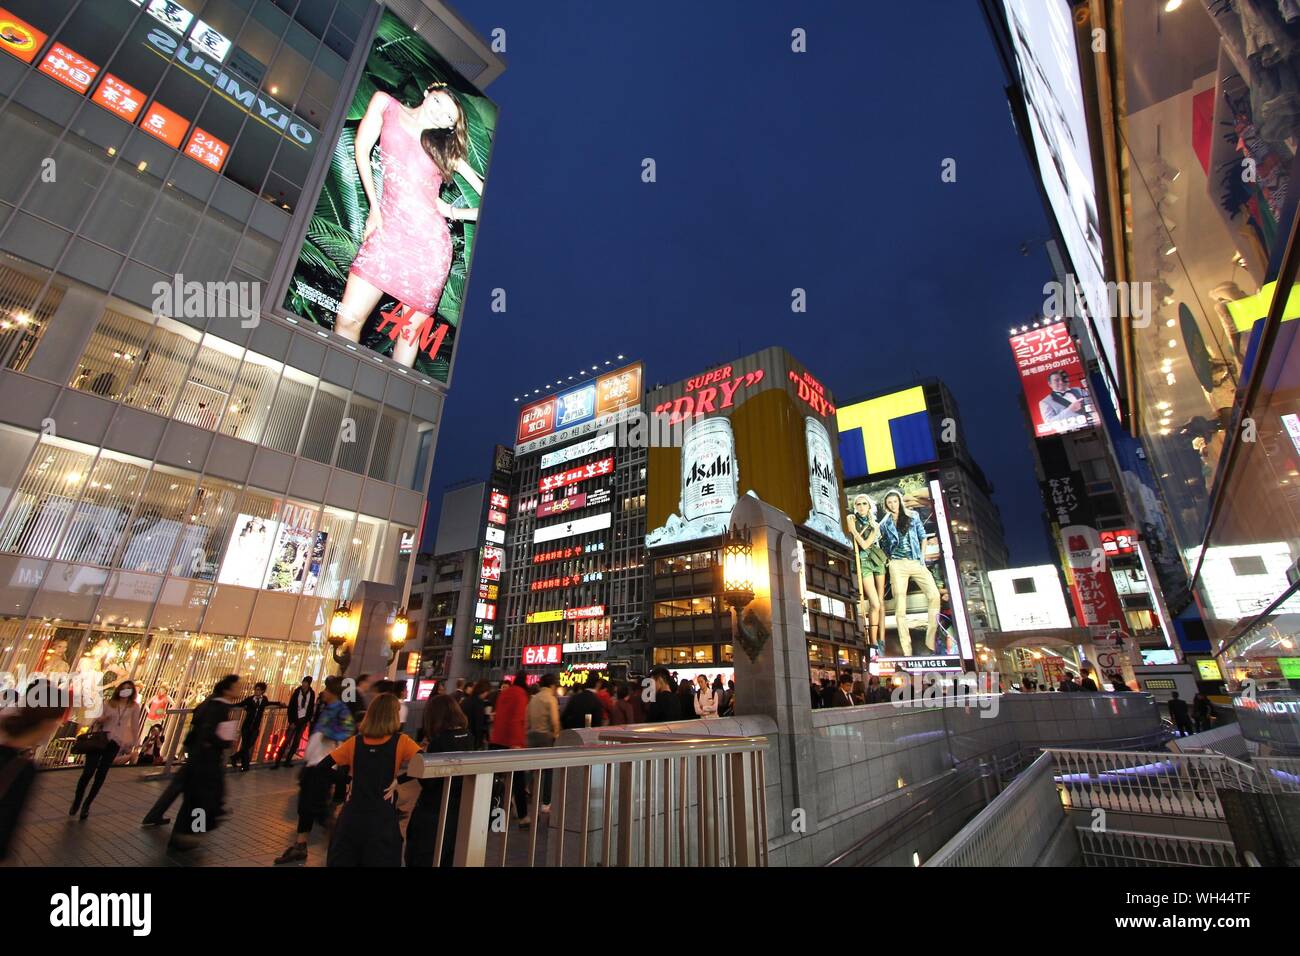 OSAKA, Giappone - 25 Aprile 2012: Shoppers visita area Shinsaibashi di Osaka, in Giappone. Osaka in Giappone è il terzo più grande città dalla popolazione con 18 milioni peopl Foto Stock